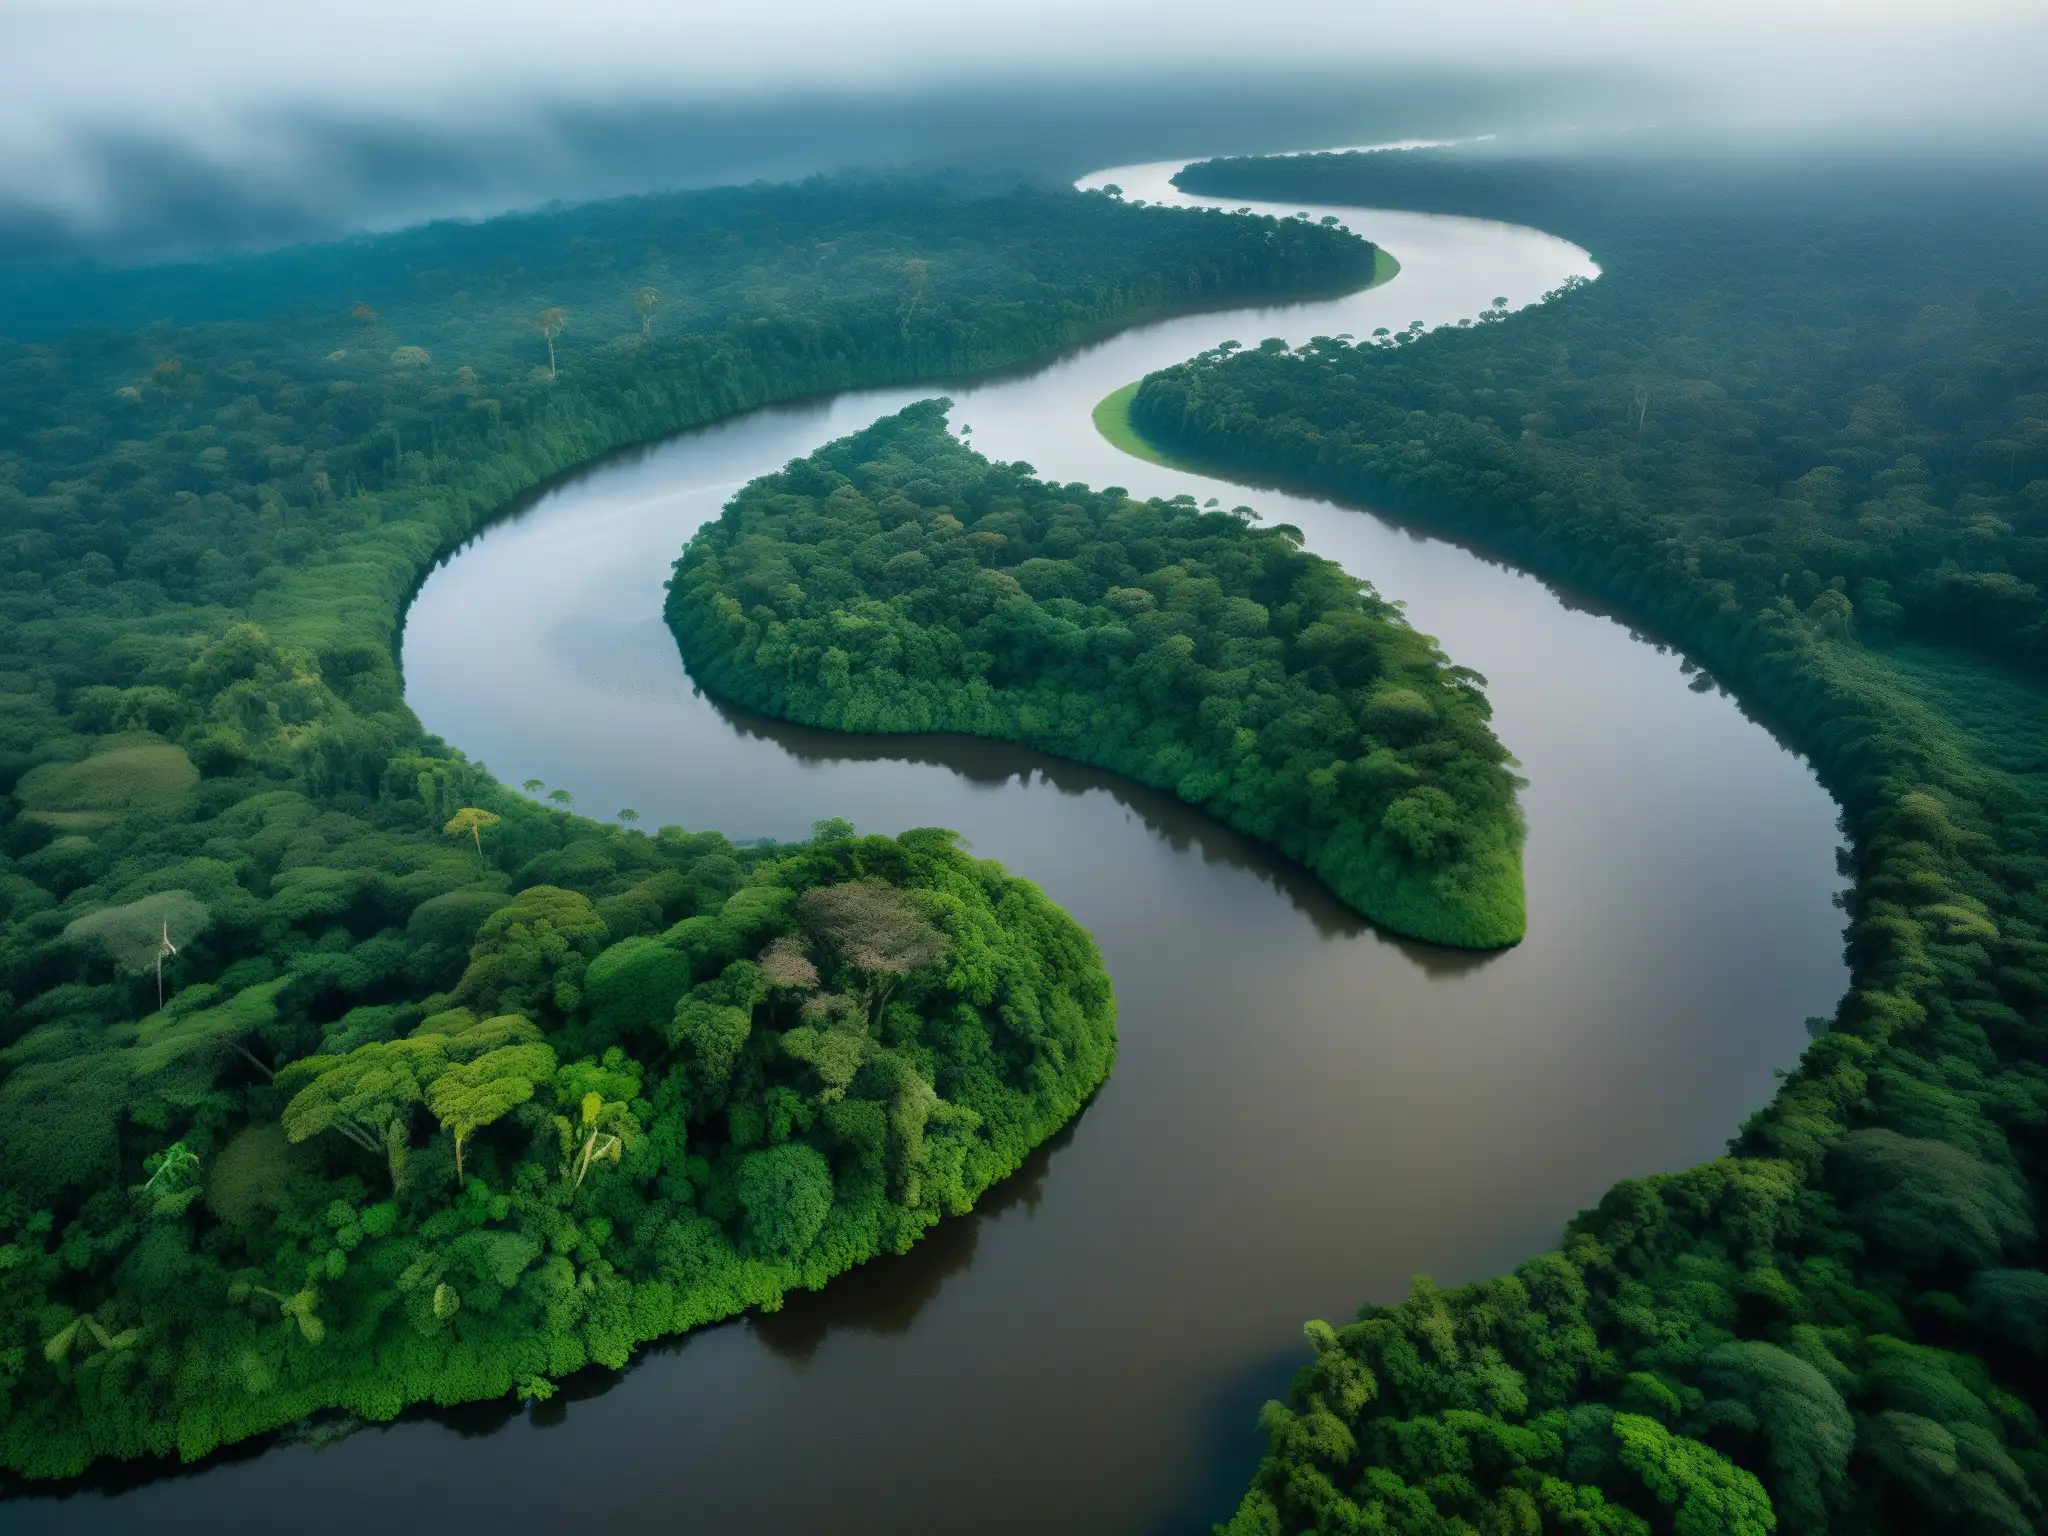 Una impresionante vista de los intrincados ríos del Amazonas con la luz matutina creando un aura mística